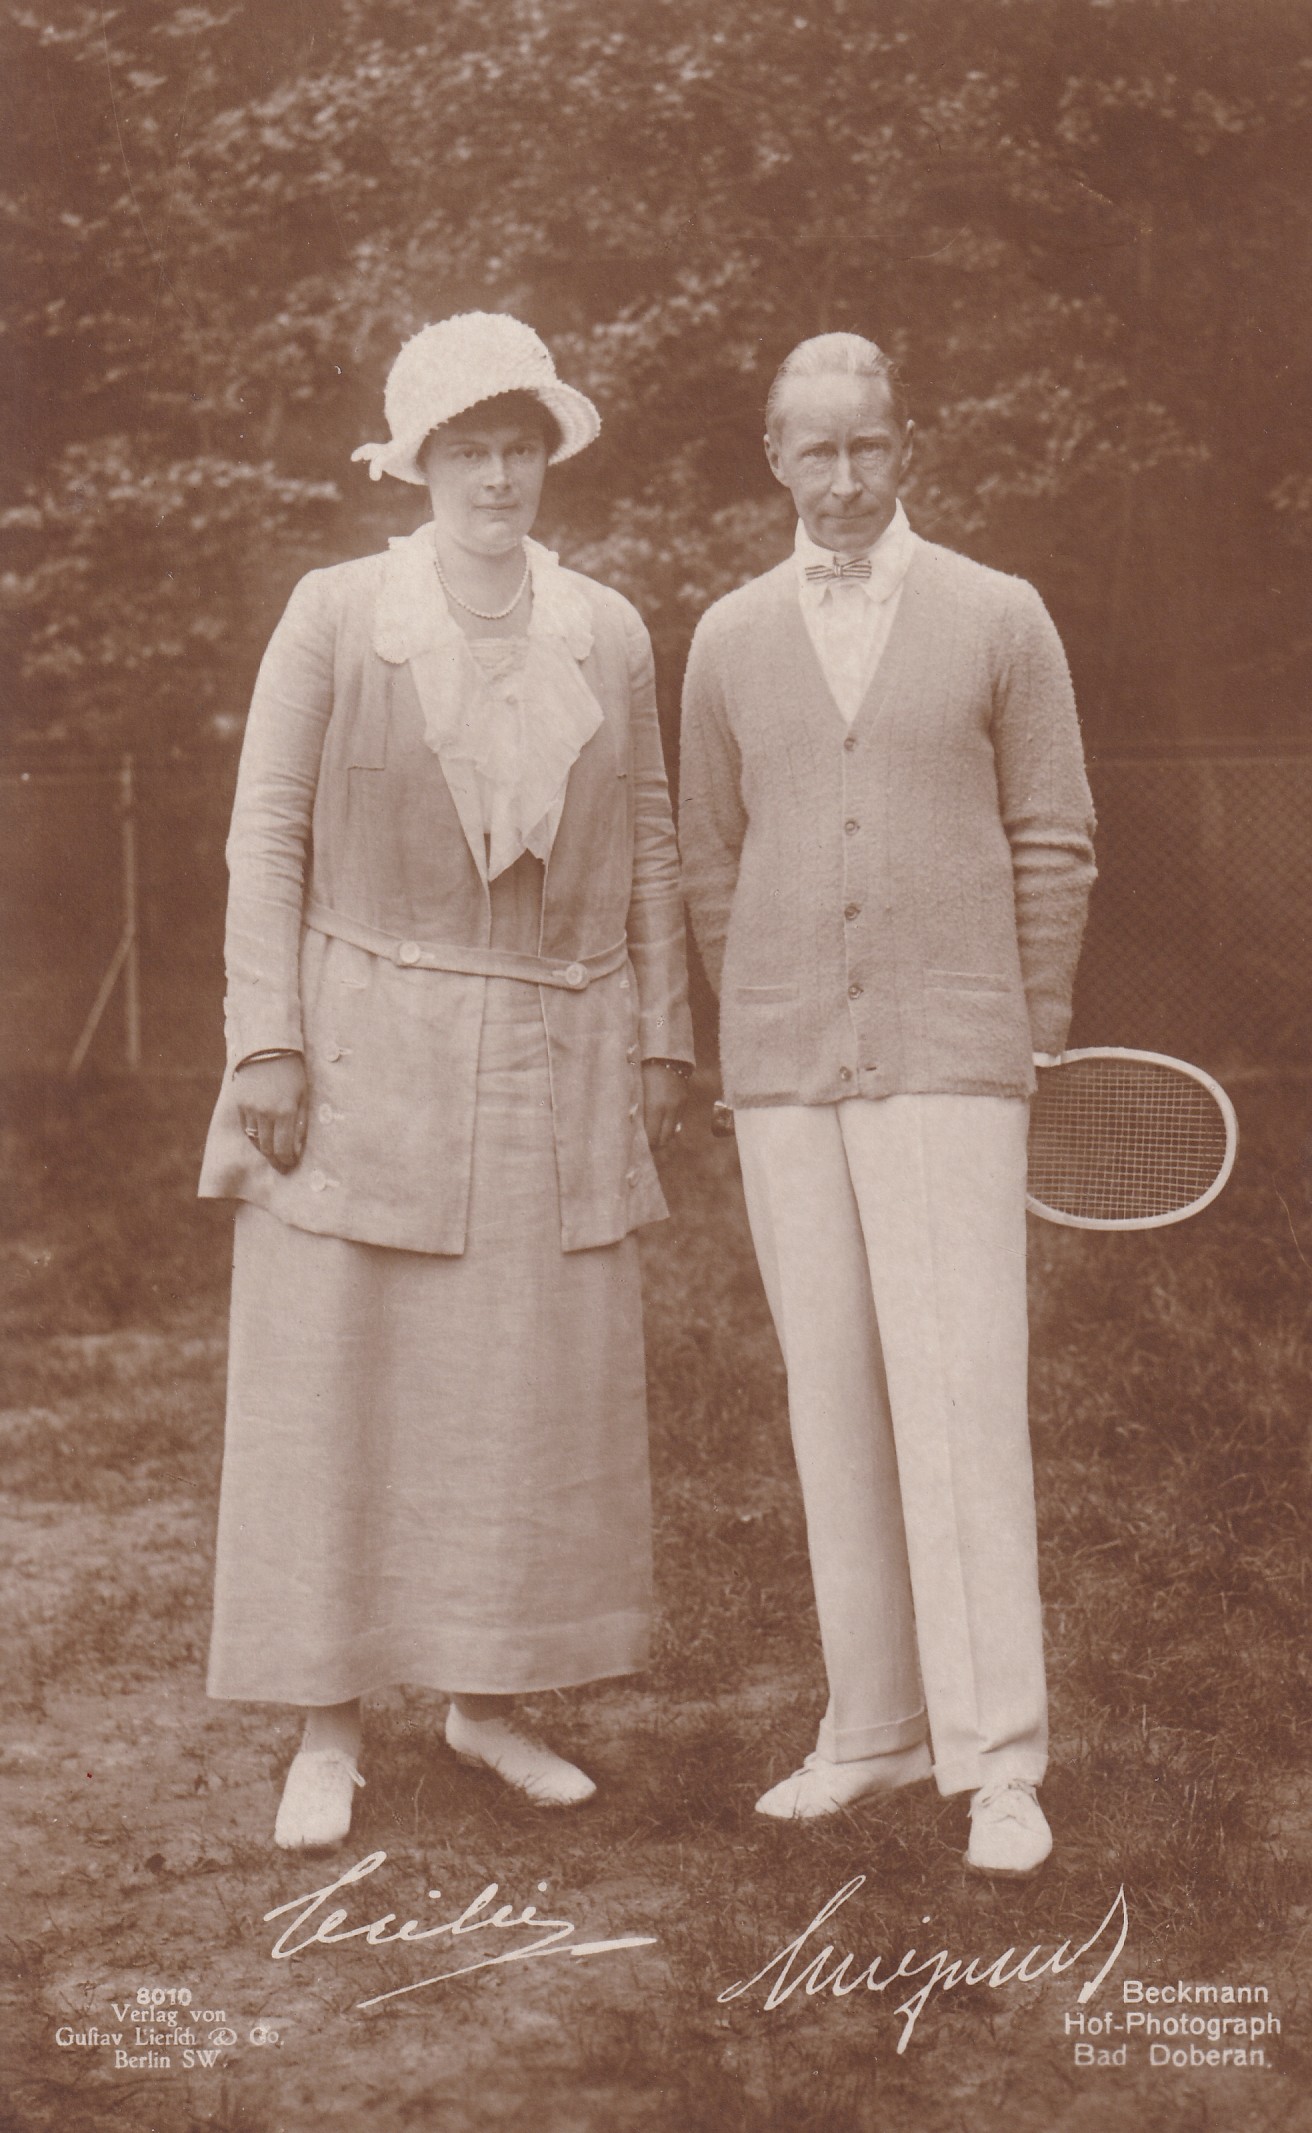 Bildpostkarte mit Foto des Kronprinzenpaares Wilhelm und Cecilie beim Tennis, Bad Doberan 1924. (Schloß Wernigerode GmbH RR-F)